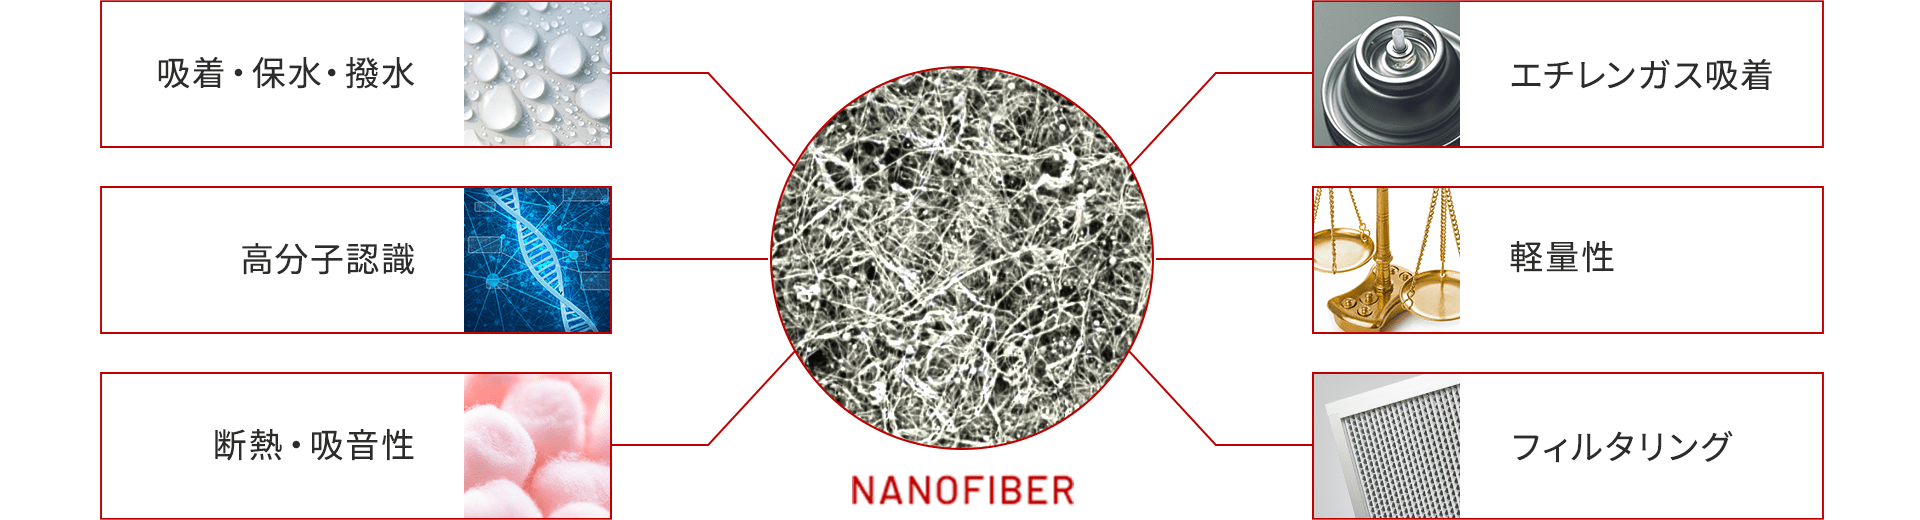 ナノファイバー特性の図